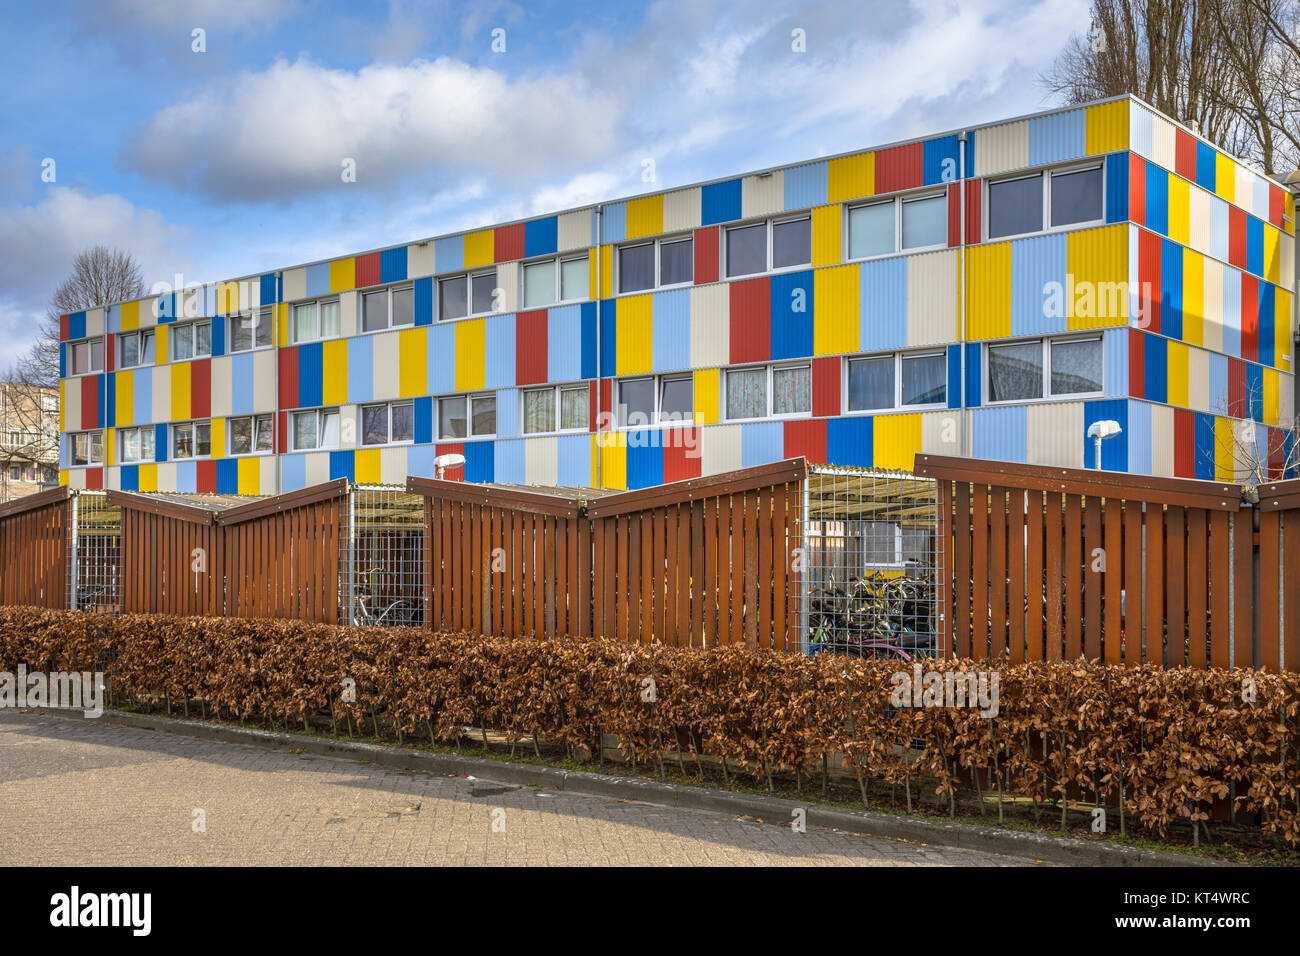 Studentenwohnungen in Schiffscontainern in pright Farben mit Fahrrad parken im Vordergrund lackiert Stockfoto